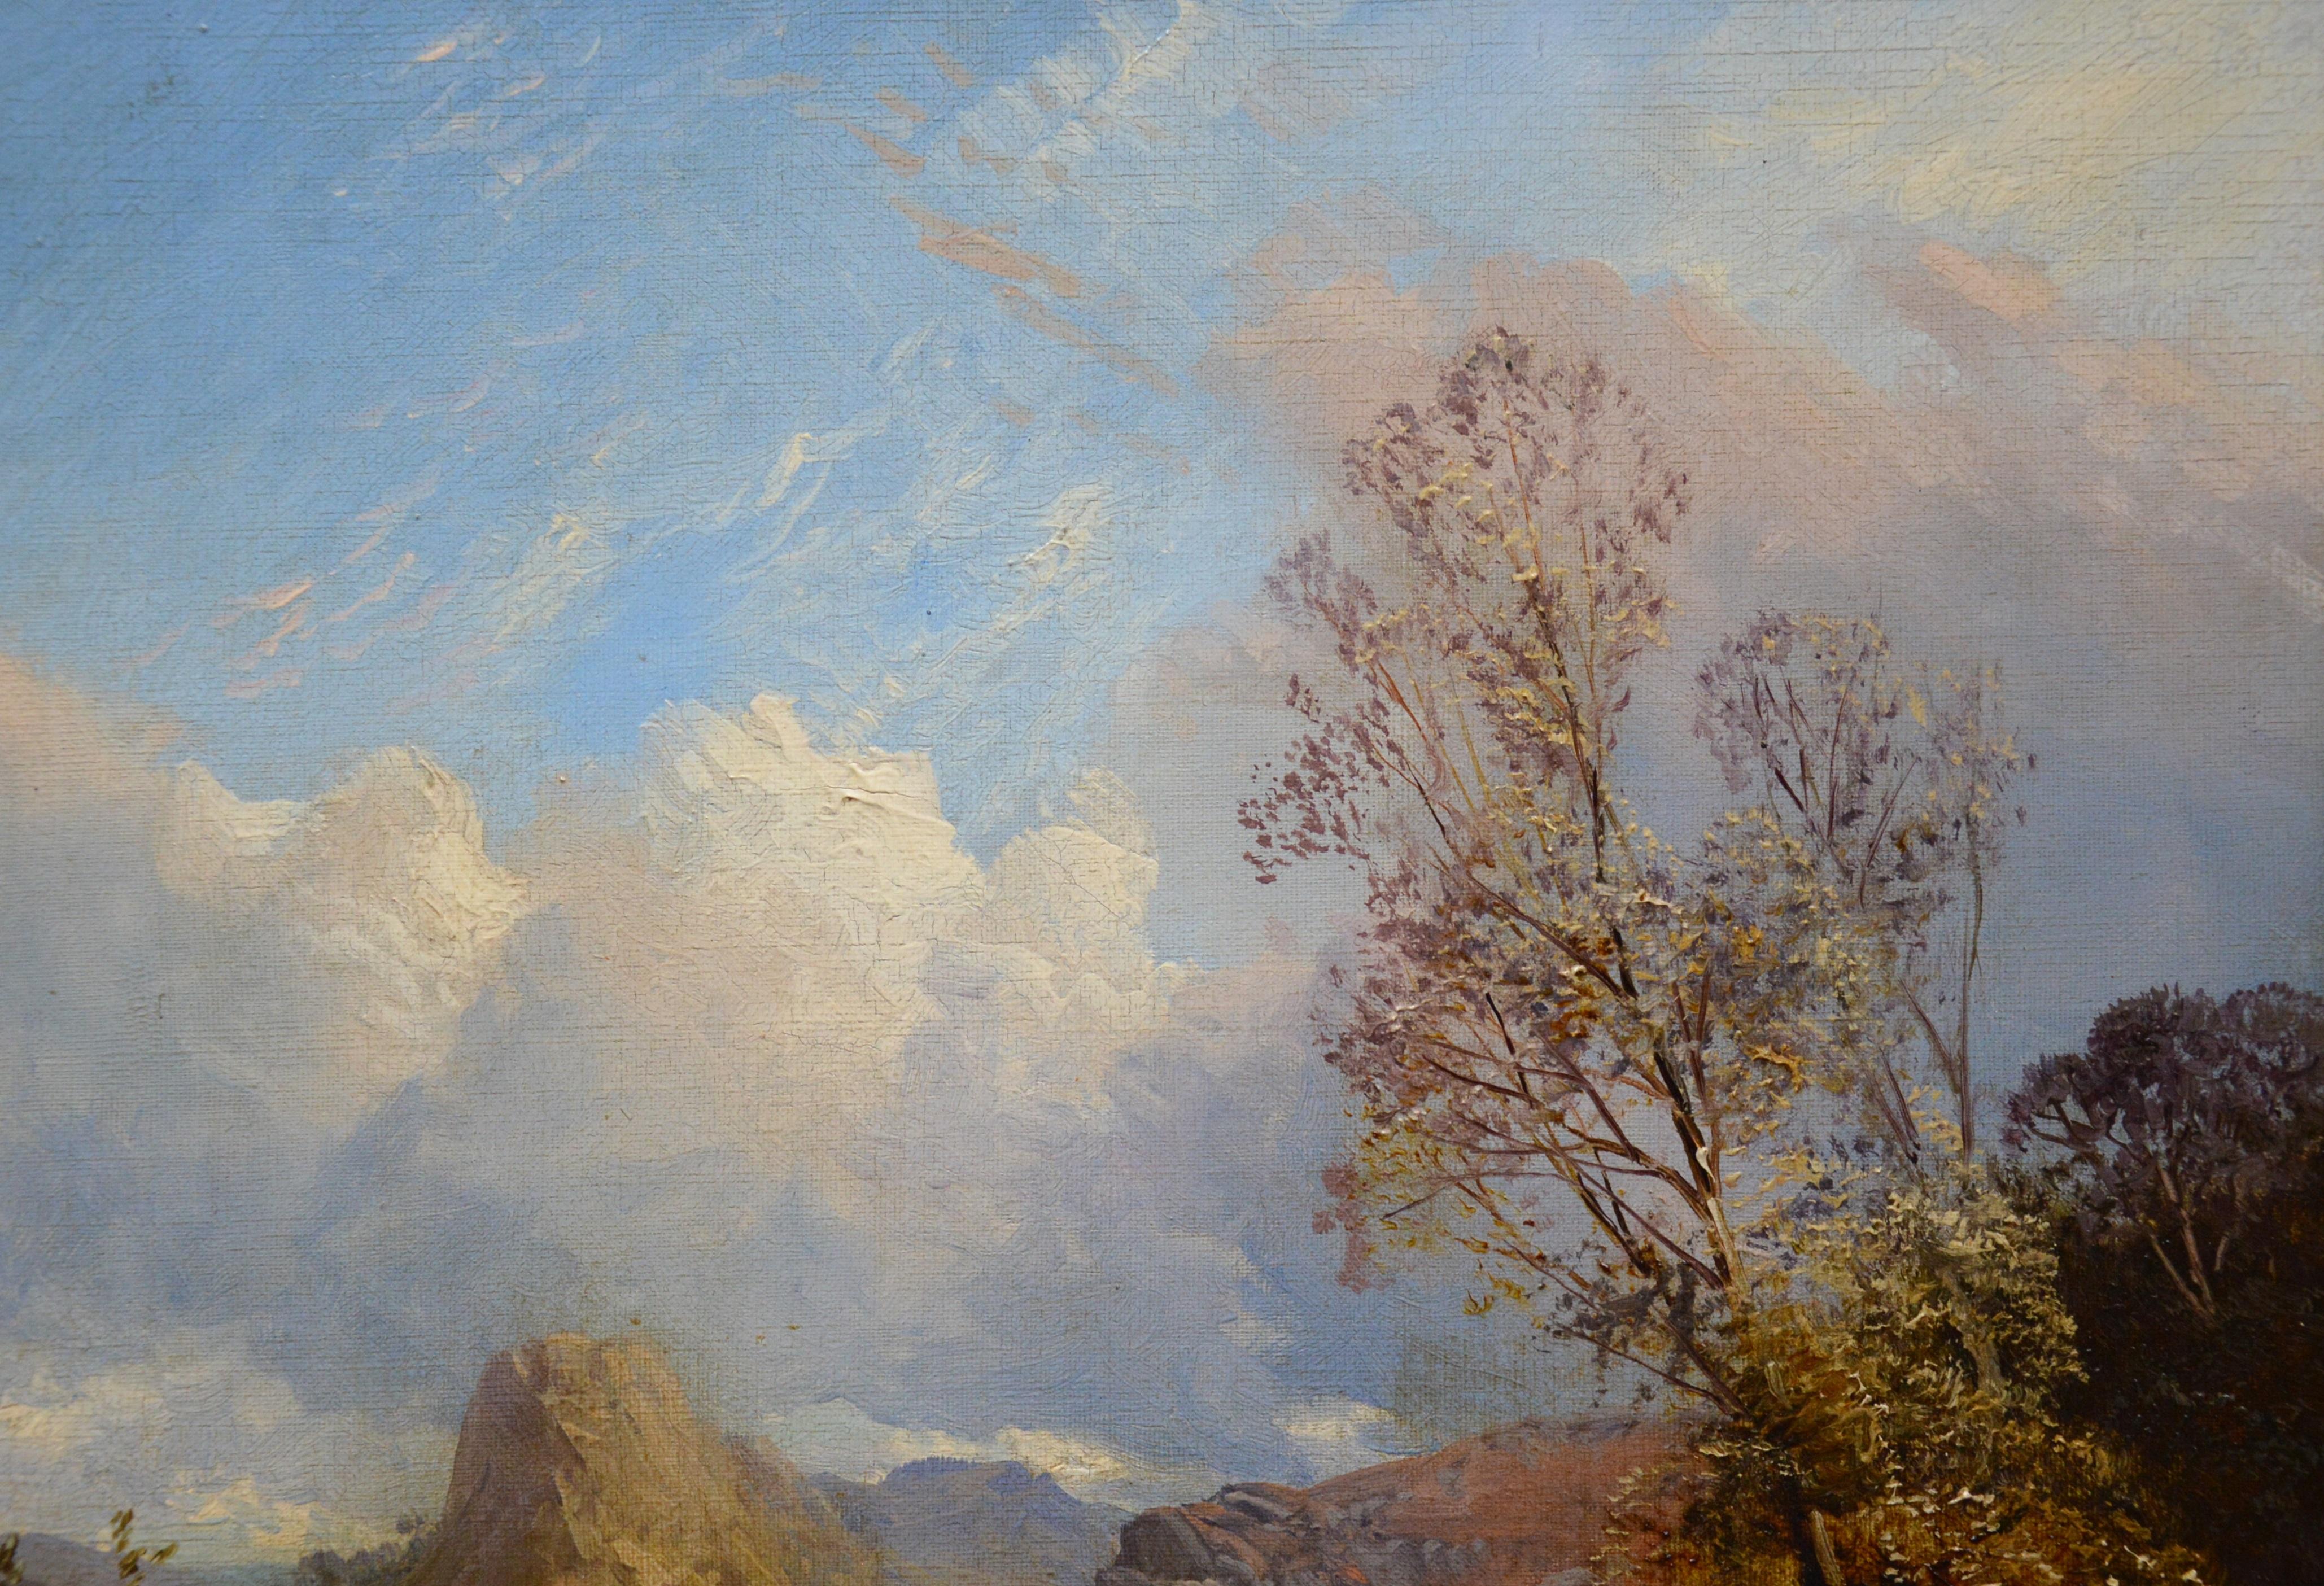 On the River Tay - Peinture à l'huile du 19ème siècle - Paysage des Highlands écossais 1